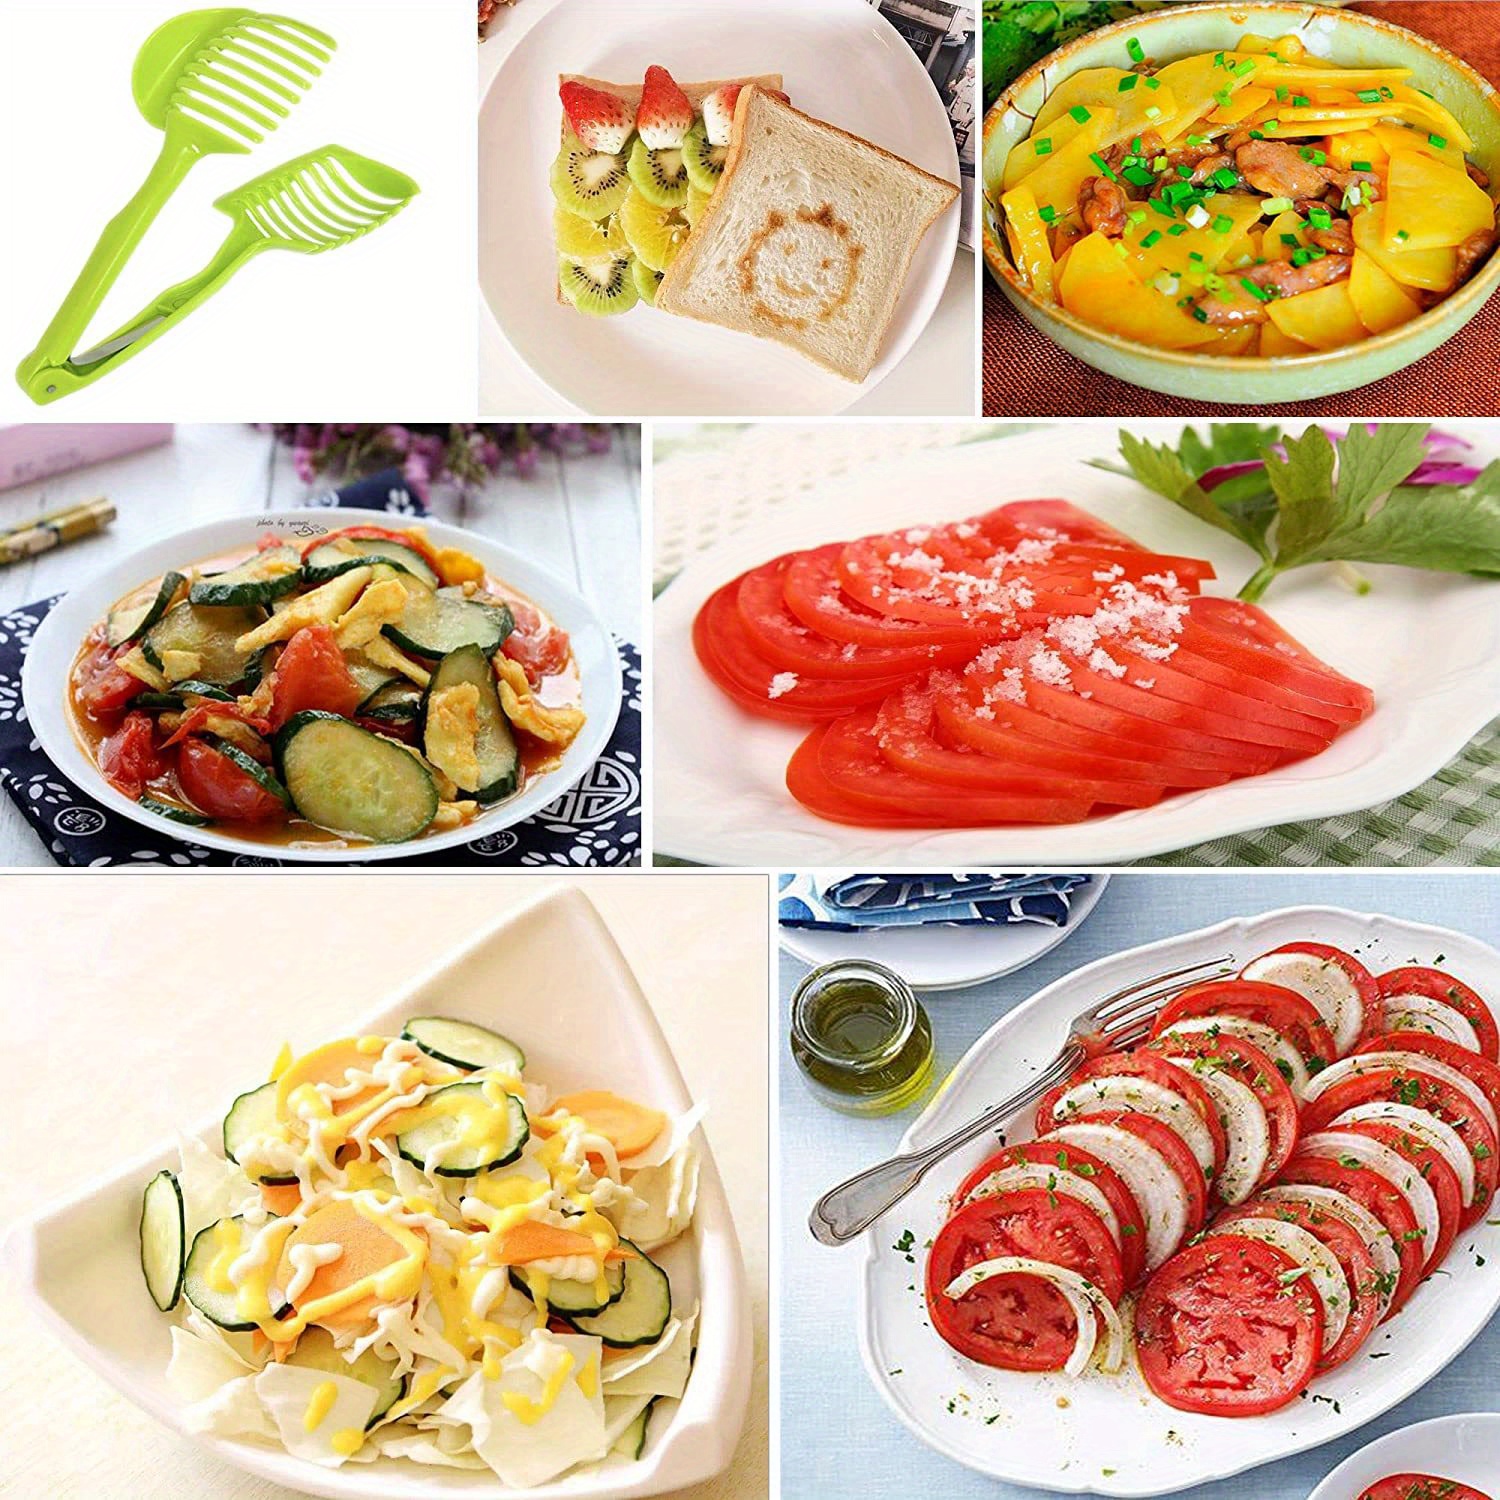 1pc, Tomato Slicer, Manual Lemon Slicer, Multifunctional Fruit Cutter,  Reusable Vegetable Cutter, Boiled Egg Slicing Tool, Handheld Onion Slicer,  Kitc